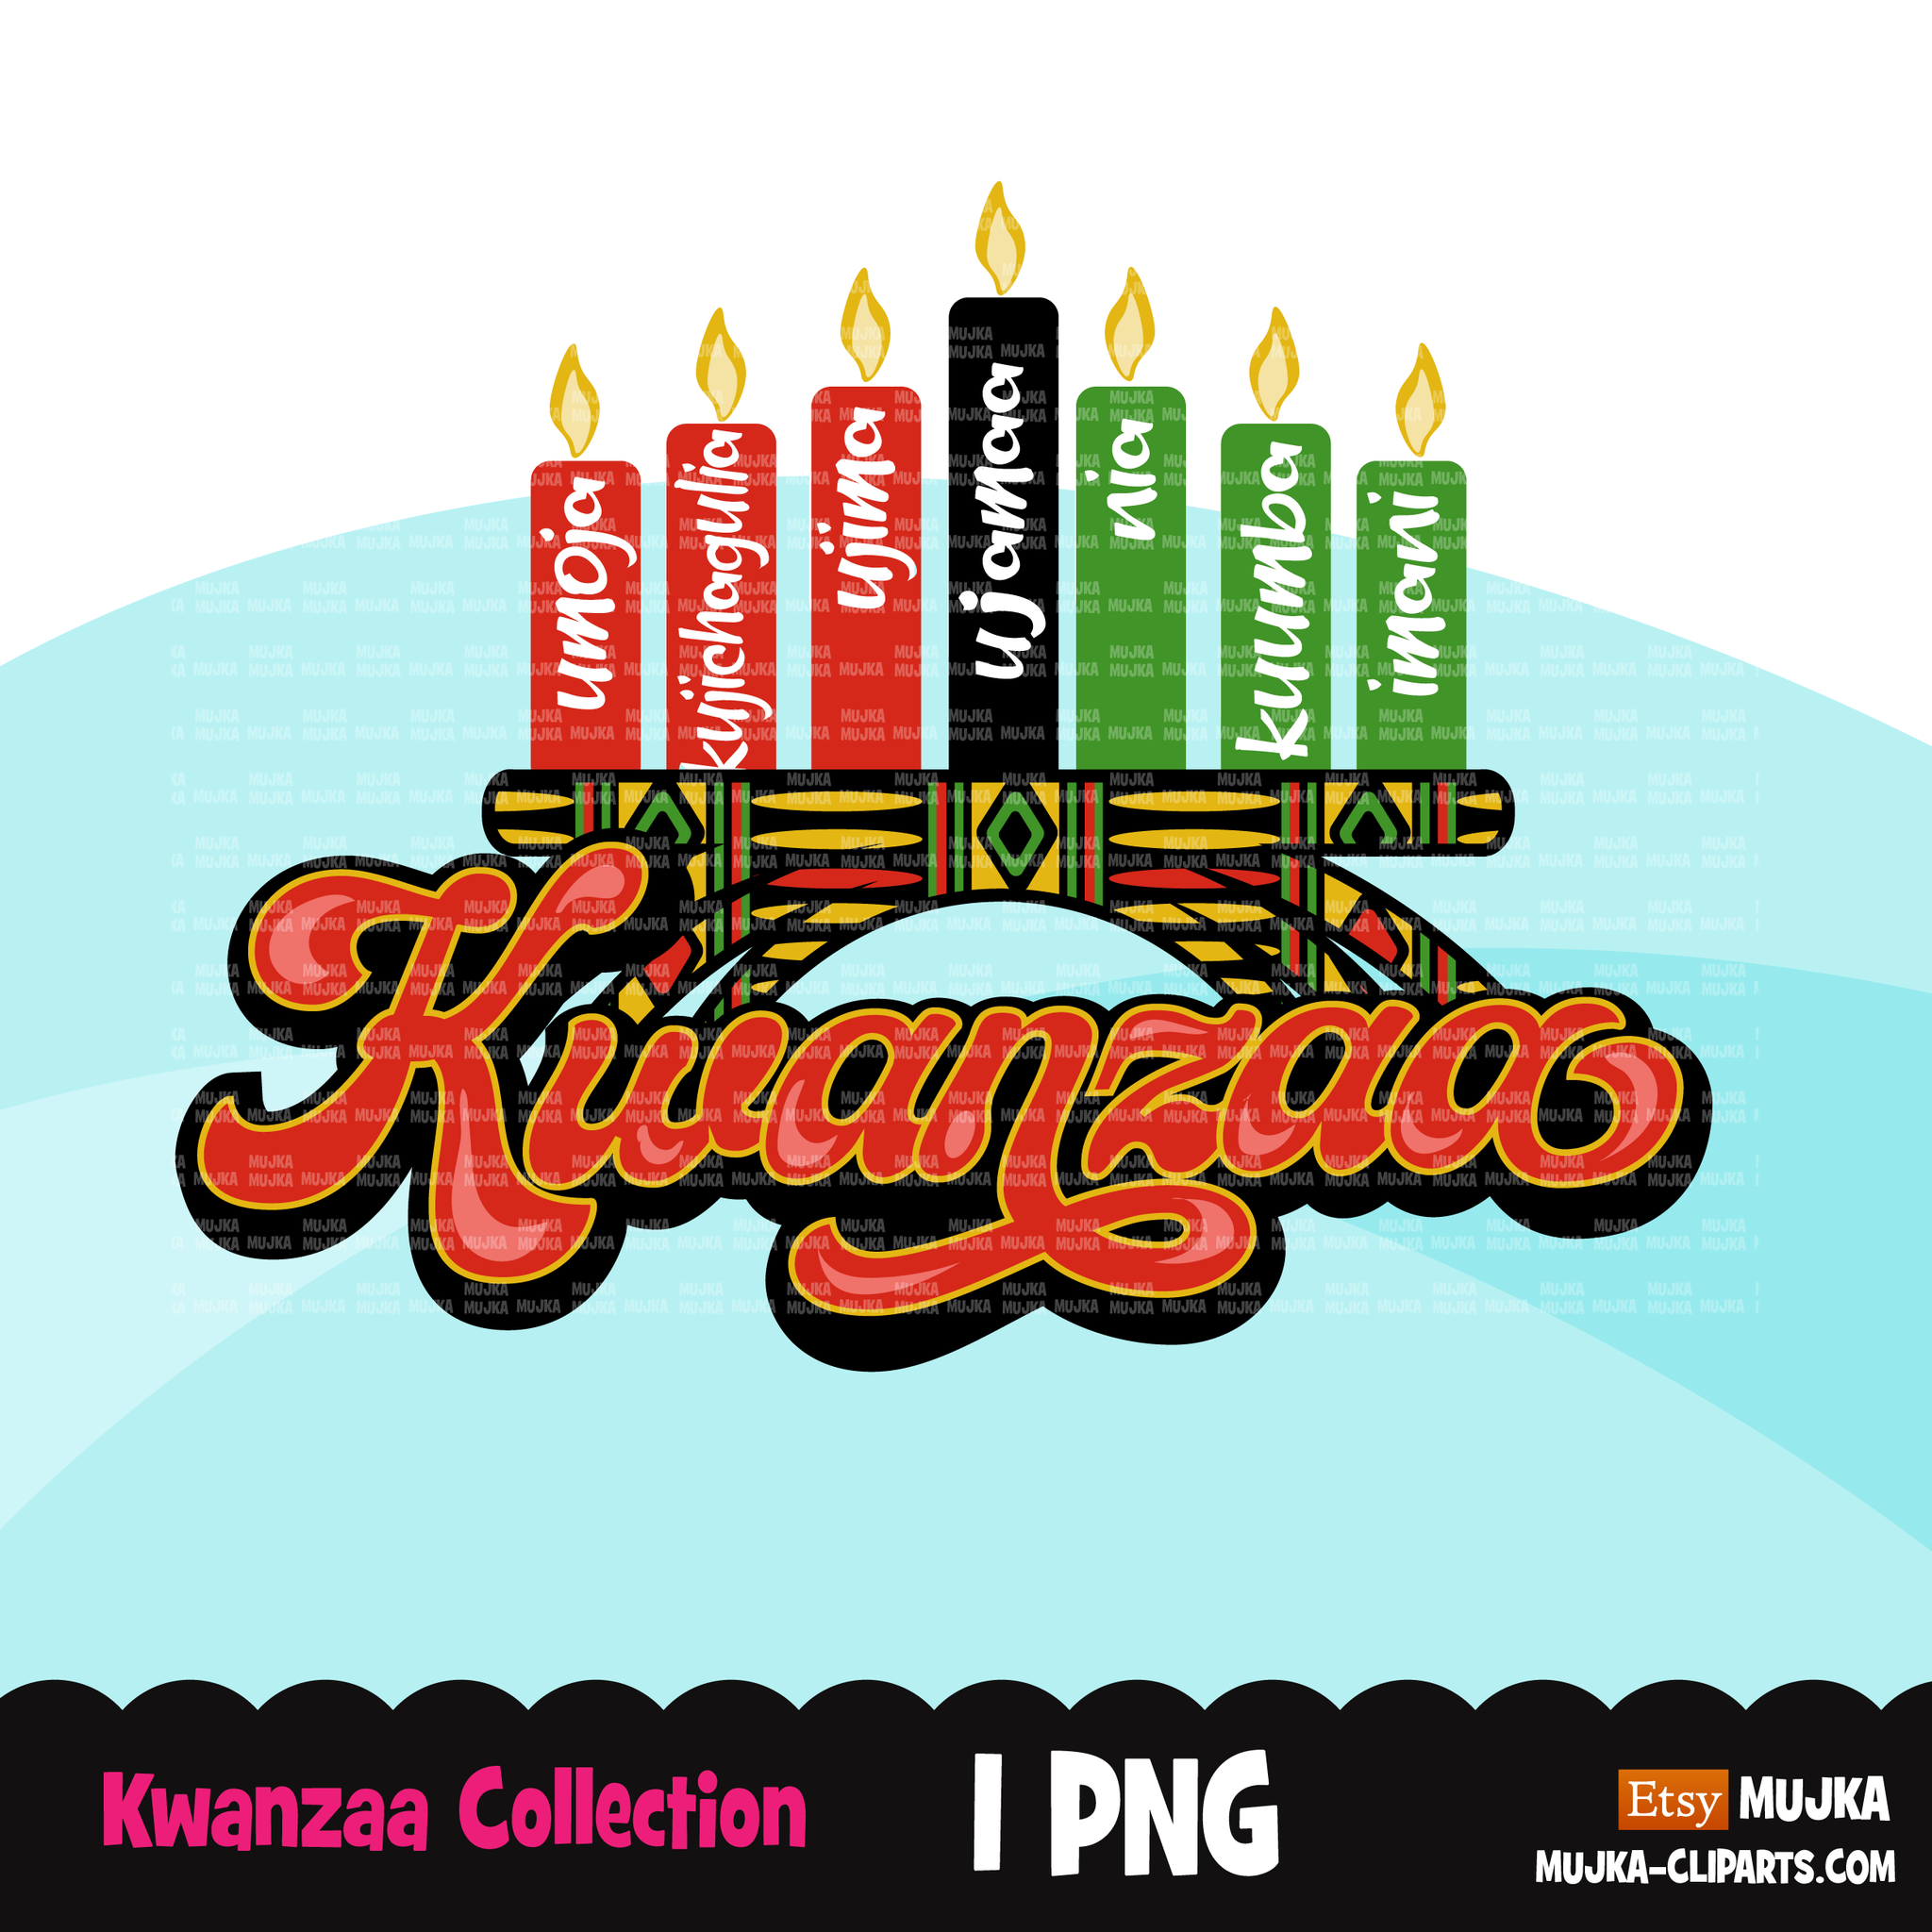 Kwanzaa png, diseños de sublimación de Kwanzaa descarga digital, imágenes prediseñadas de herencia africana, kinara africana png, Juneteenth png, arte de pared de Kwanzaa, historia negra